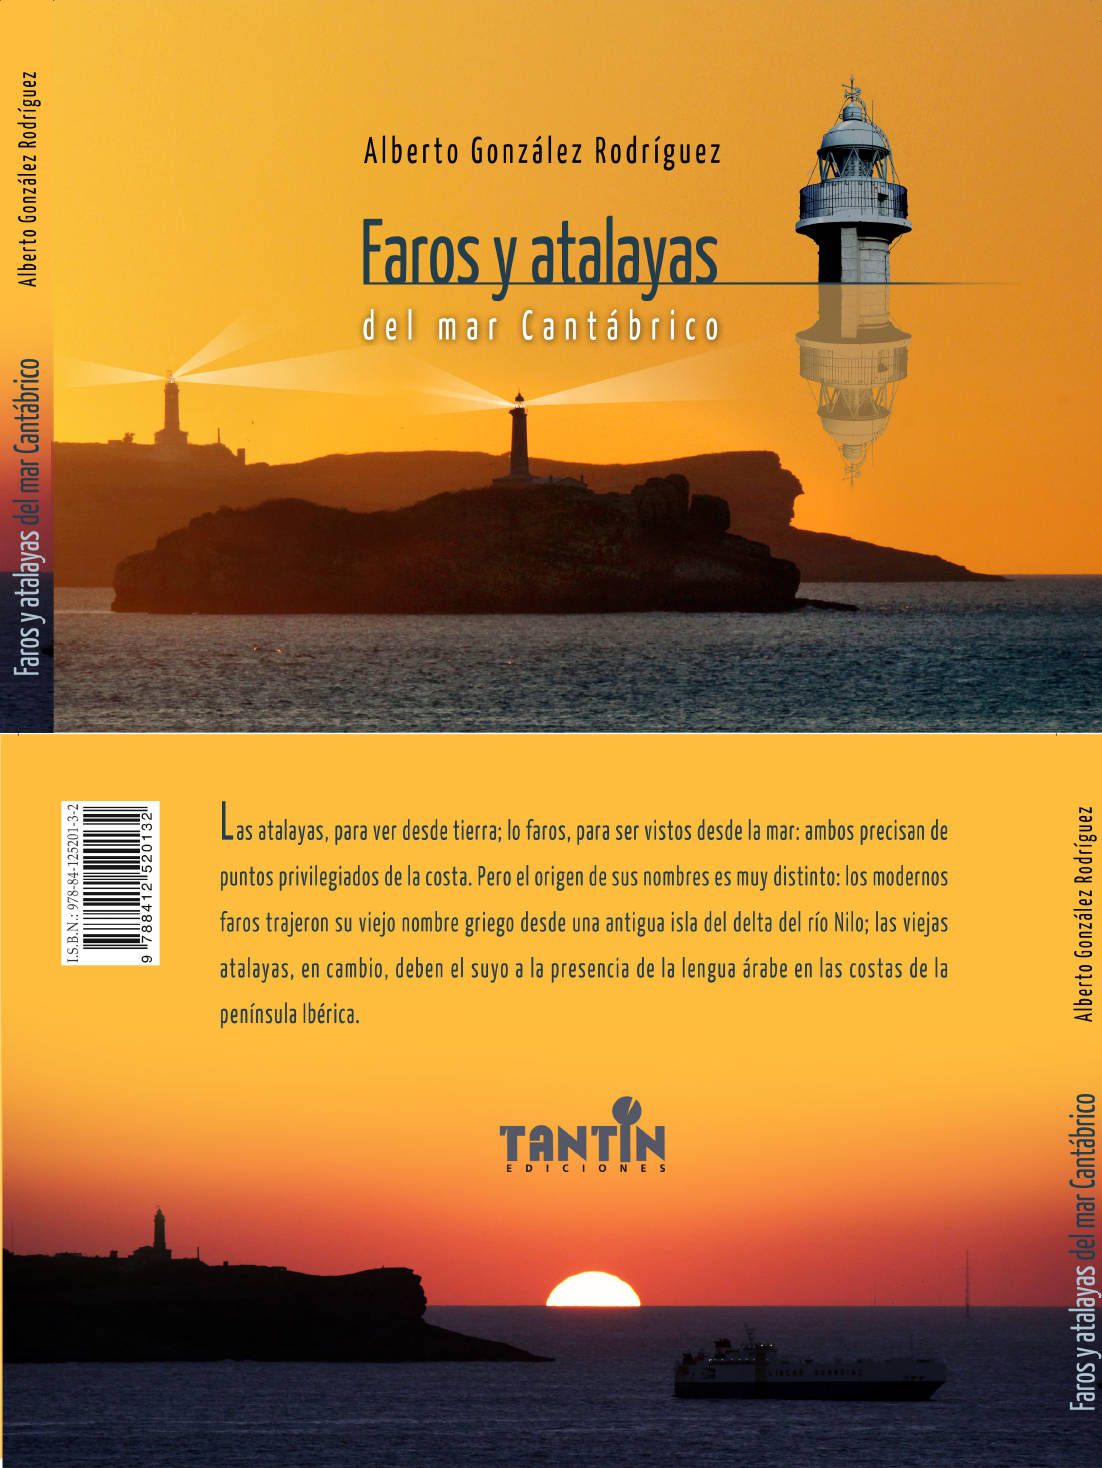 Portada libro Faros y atalayas del mar cantabrico - Alberto Gonzalez Rodriguez